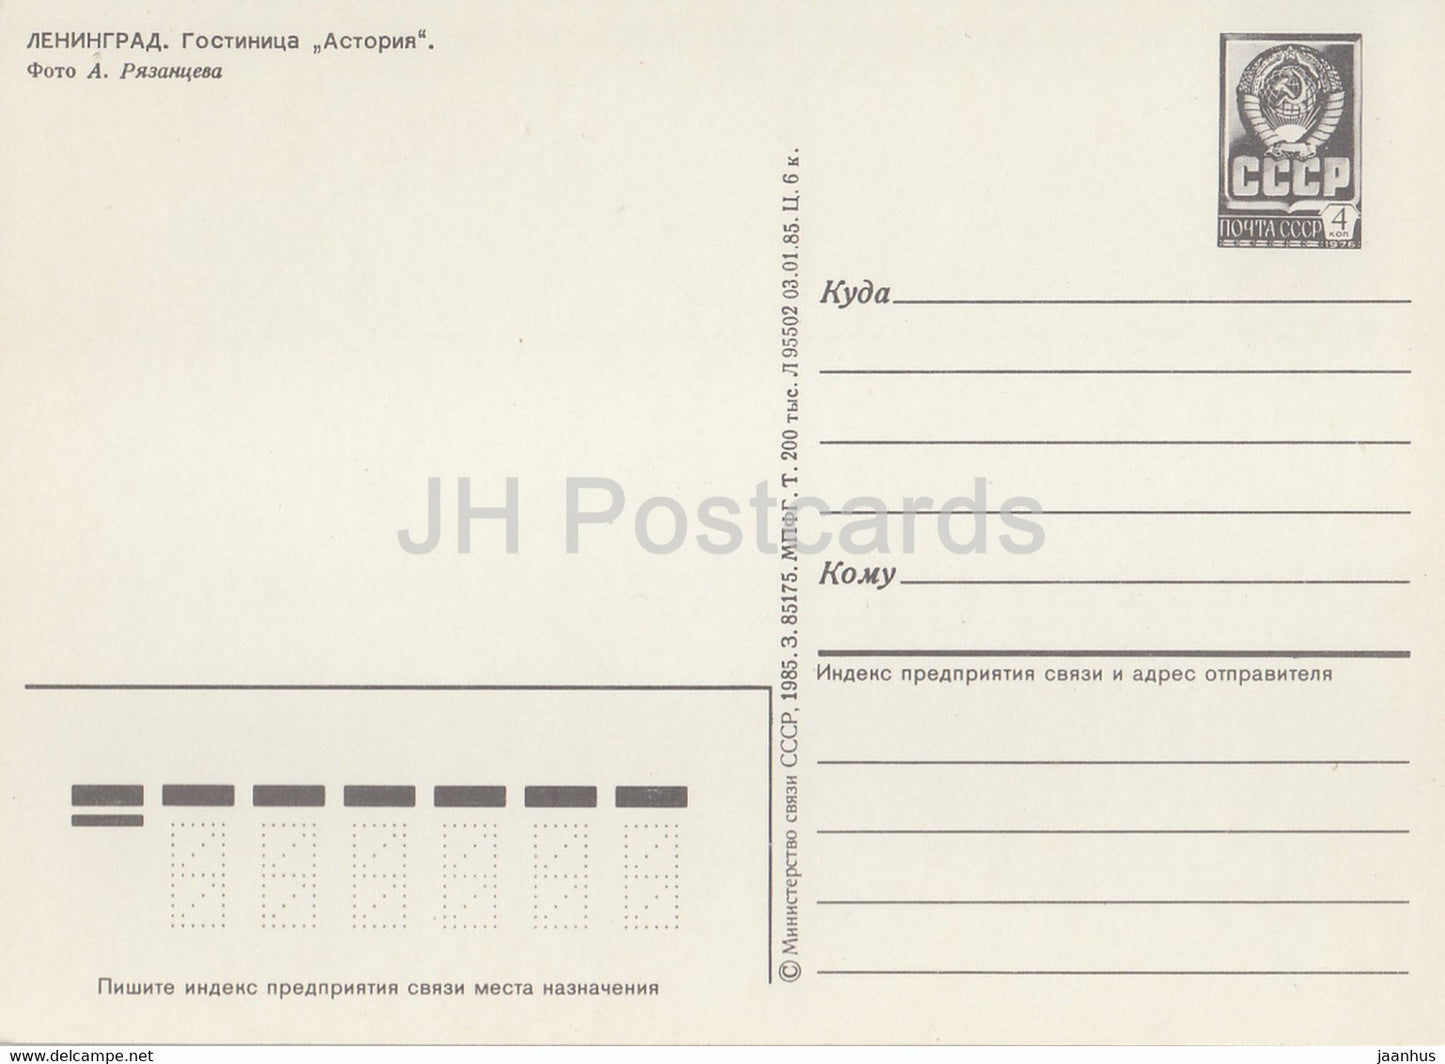 Leningrad - St Petersburg - hotel Astoria - bus Ikarus - postal stationery - 1985 - Russia USSR - unused